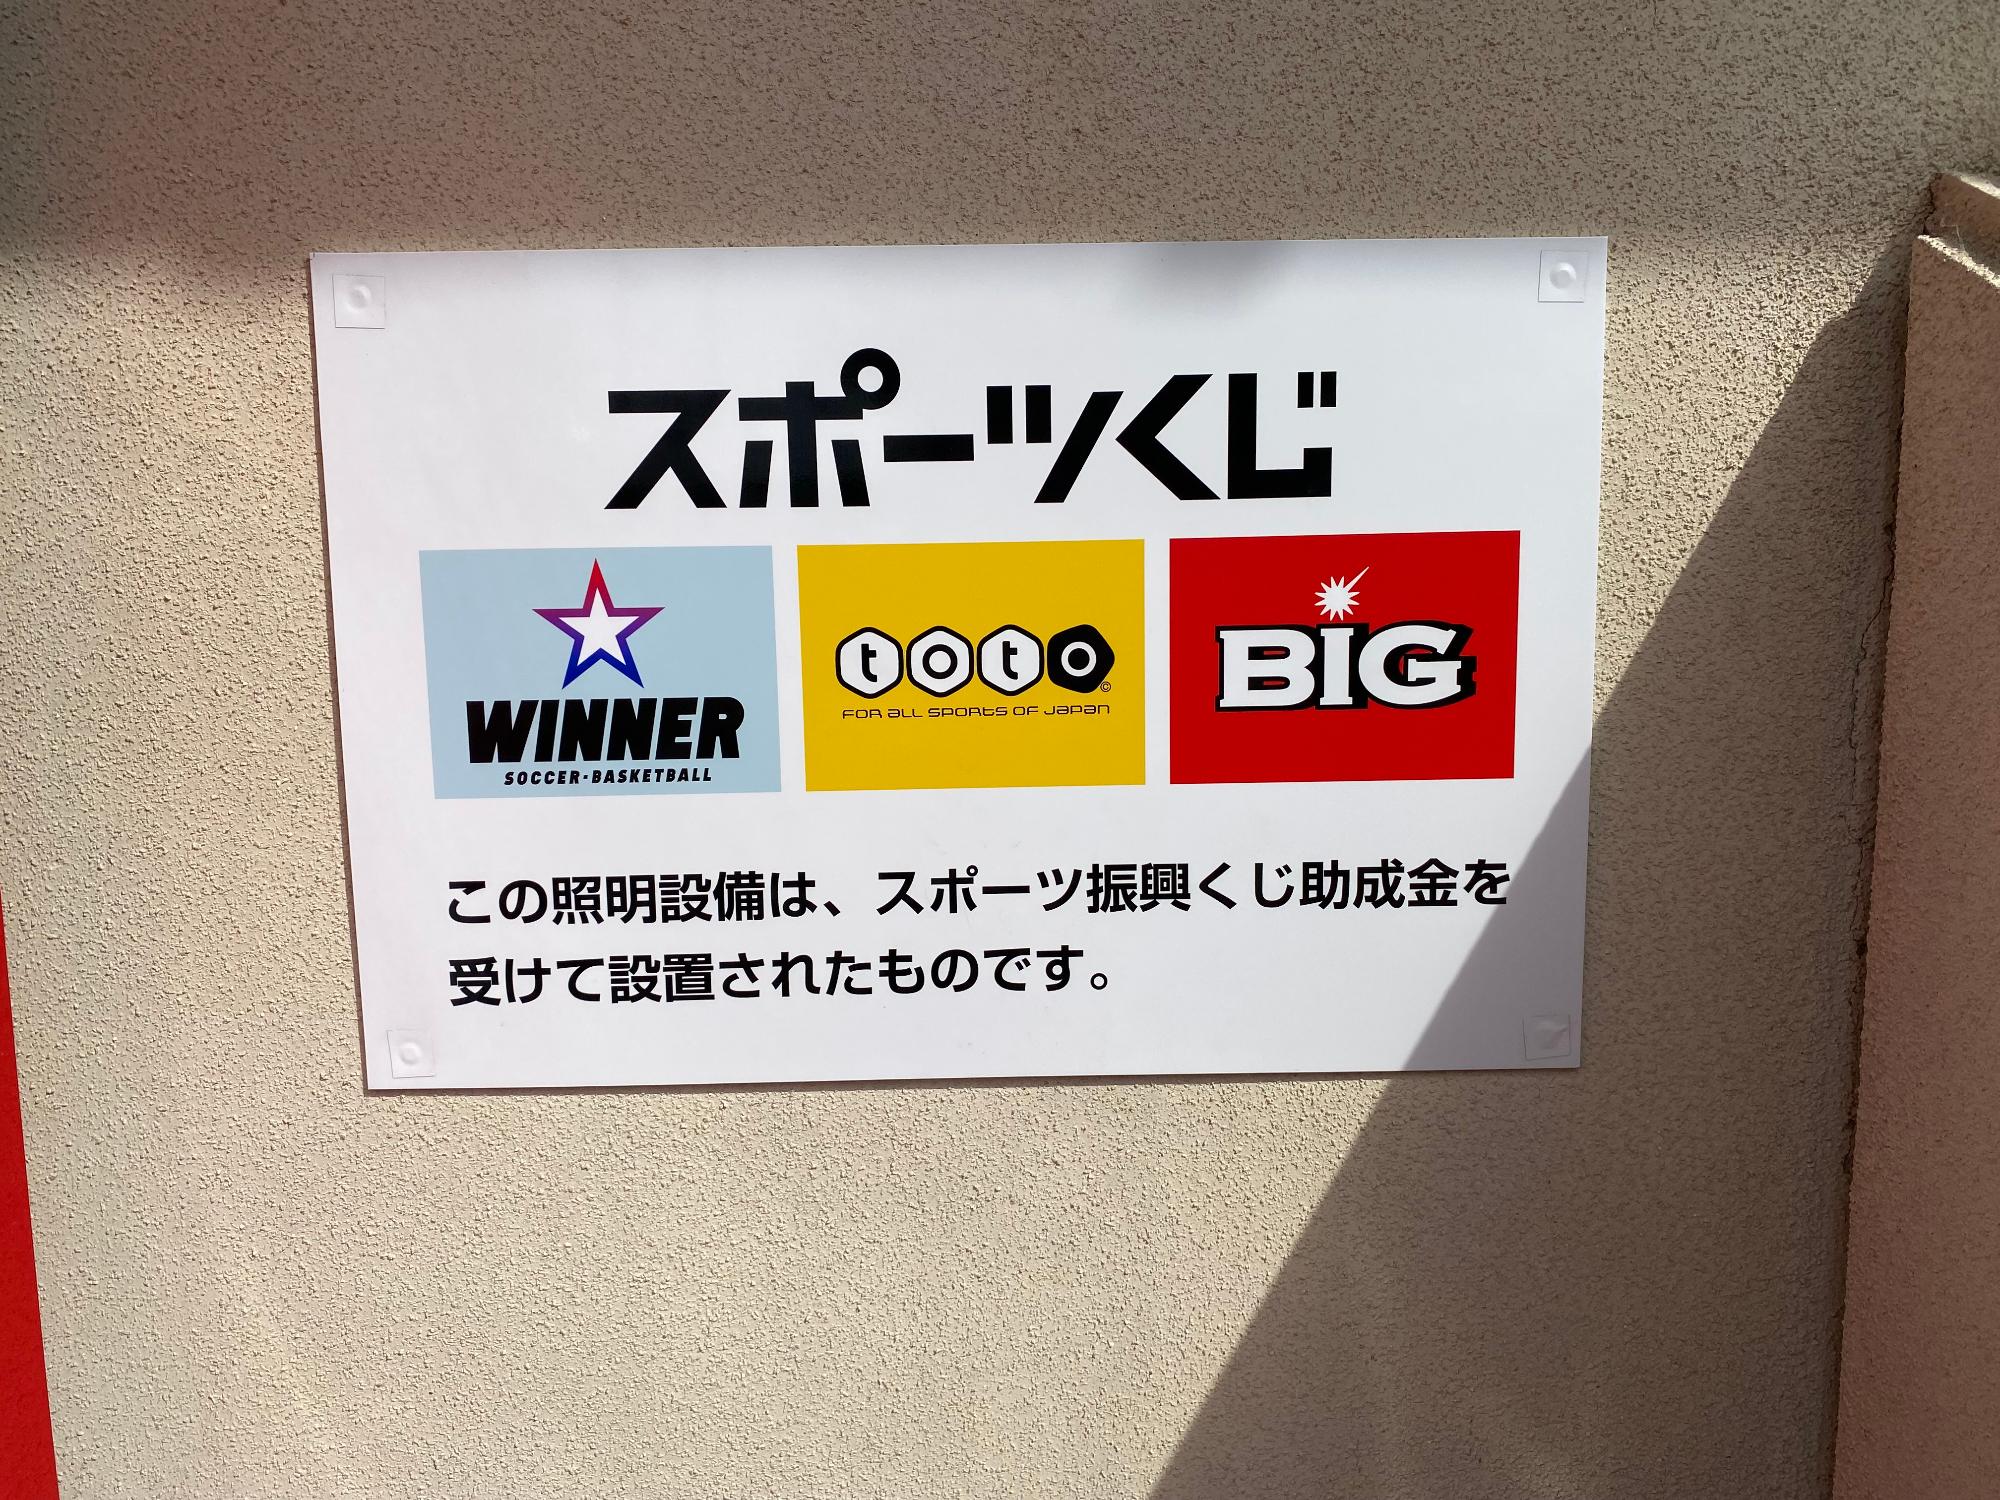 大徳テニスコートクラブハウス入口に設置されたスポーツくじ、toto、BIG、WINNERのロゴマーク入り看板